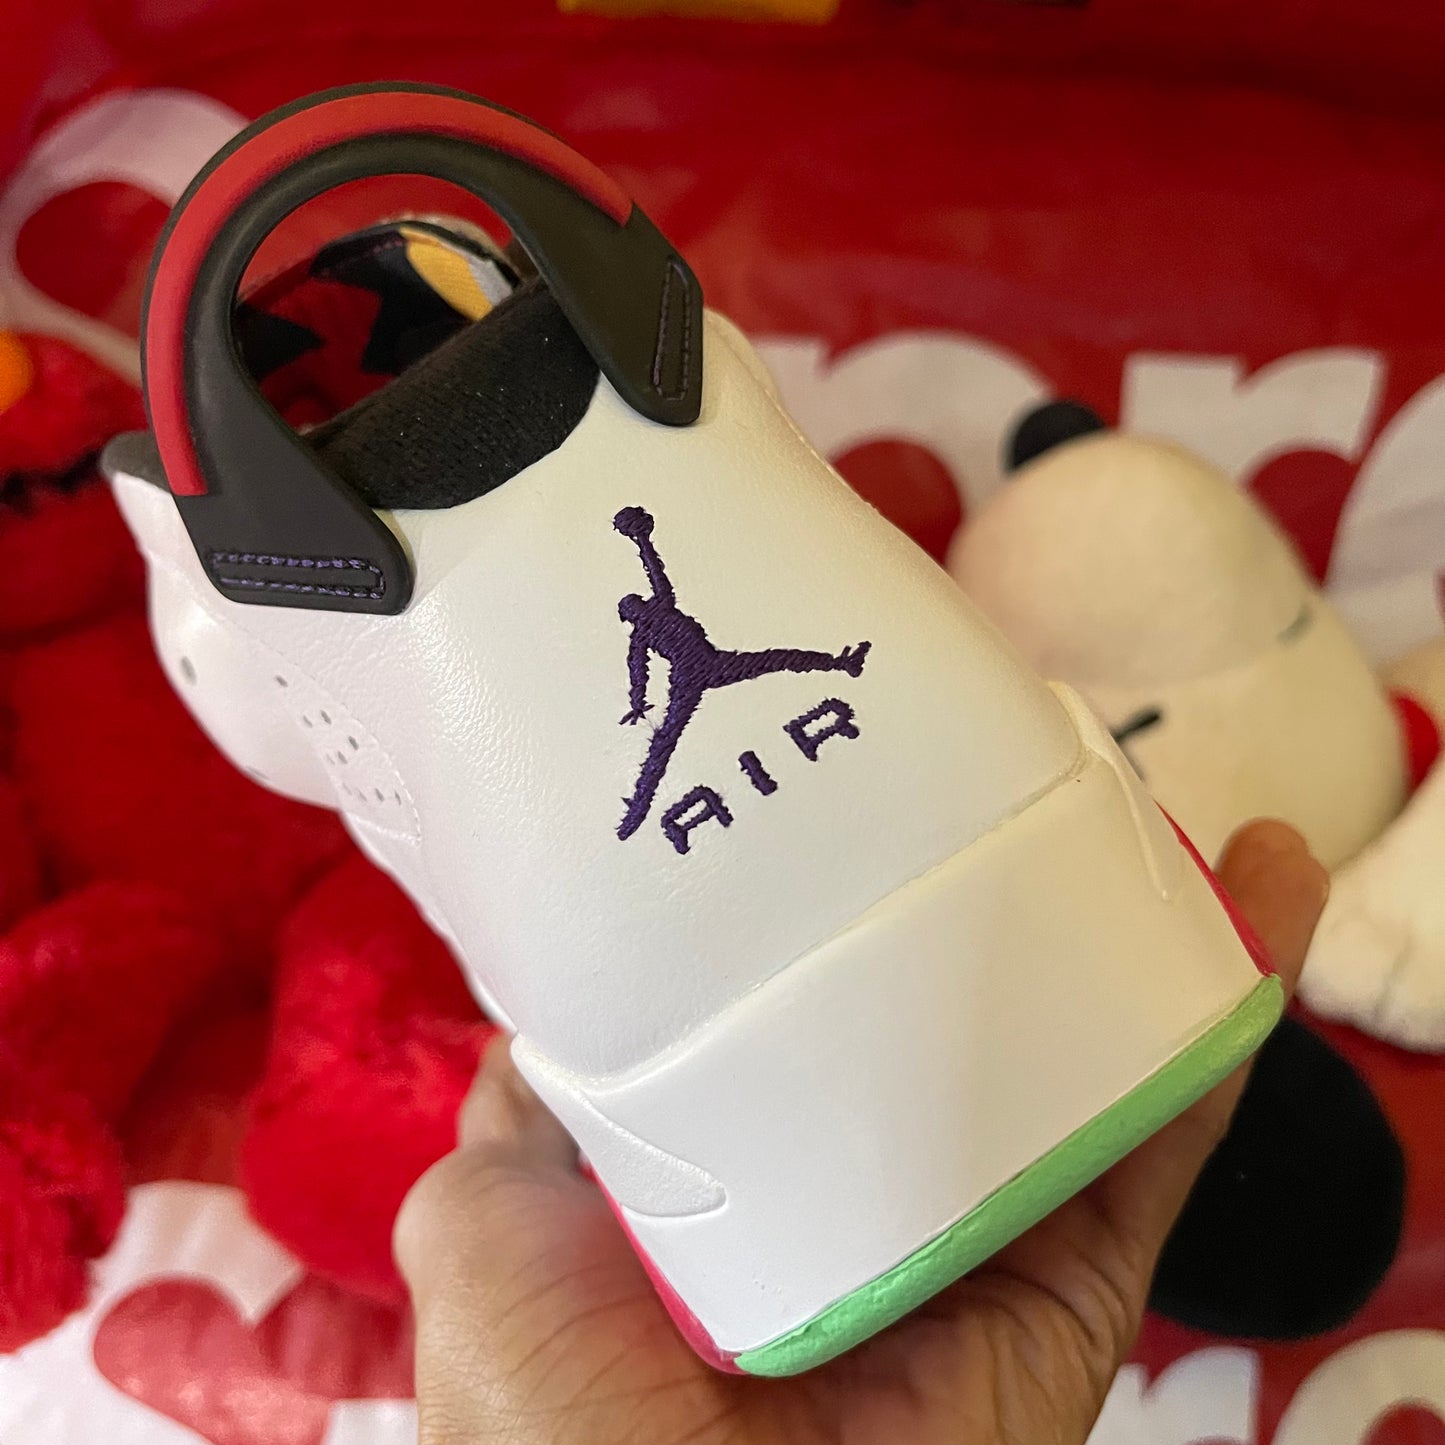 Air Jordan 6 Retro “Hare”